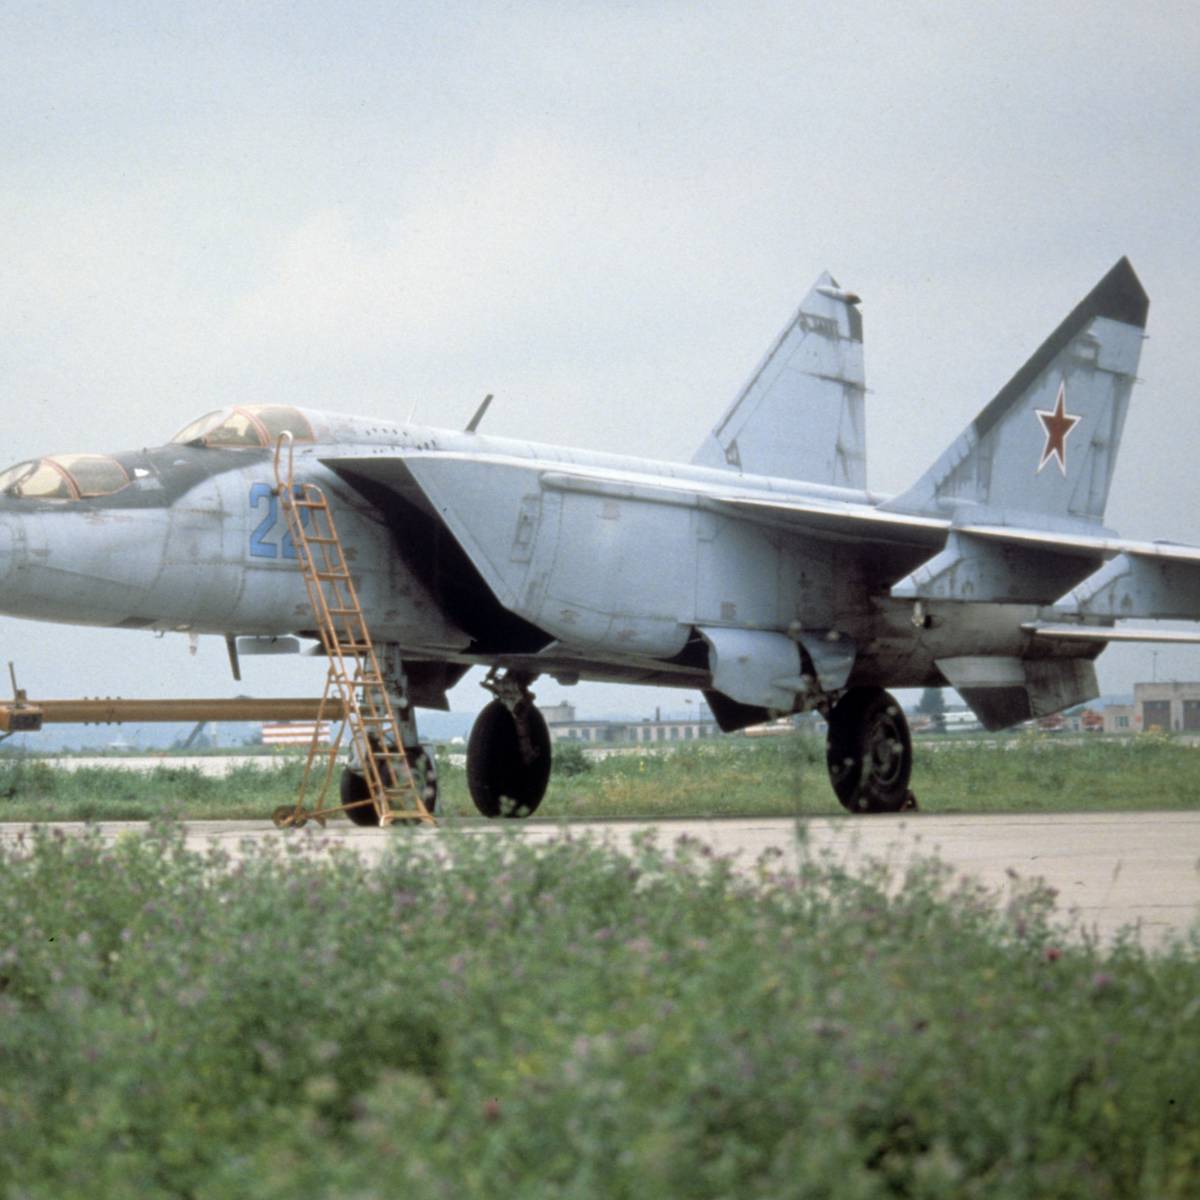 Достойные соперники: как истребители МиГ-25 сражались с F-15 Eagle